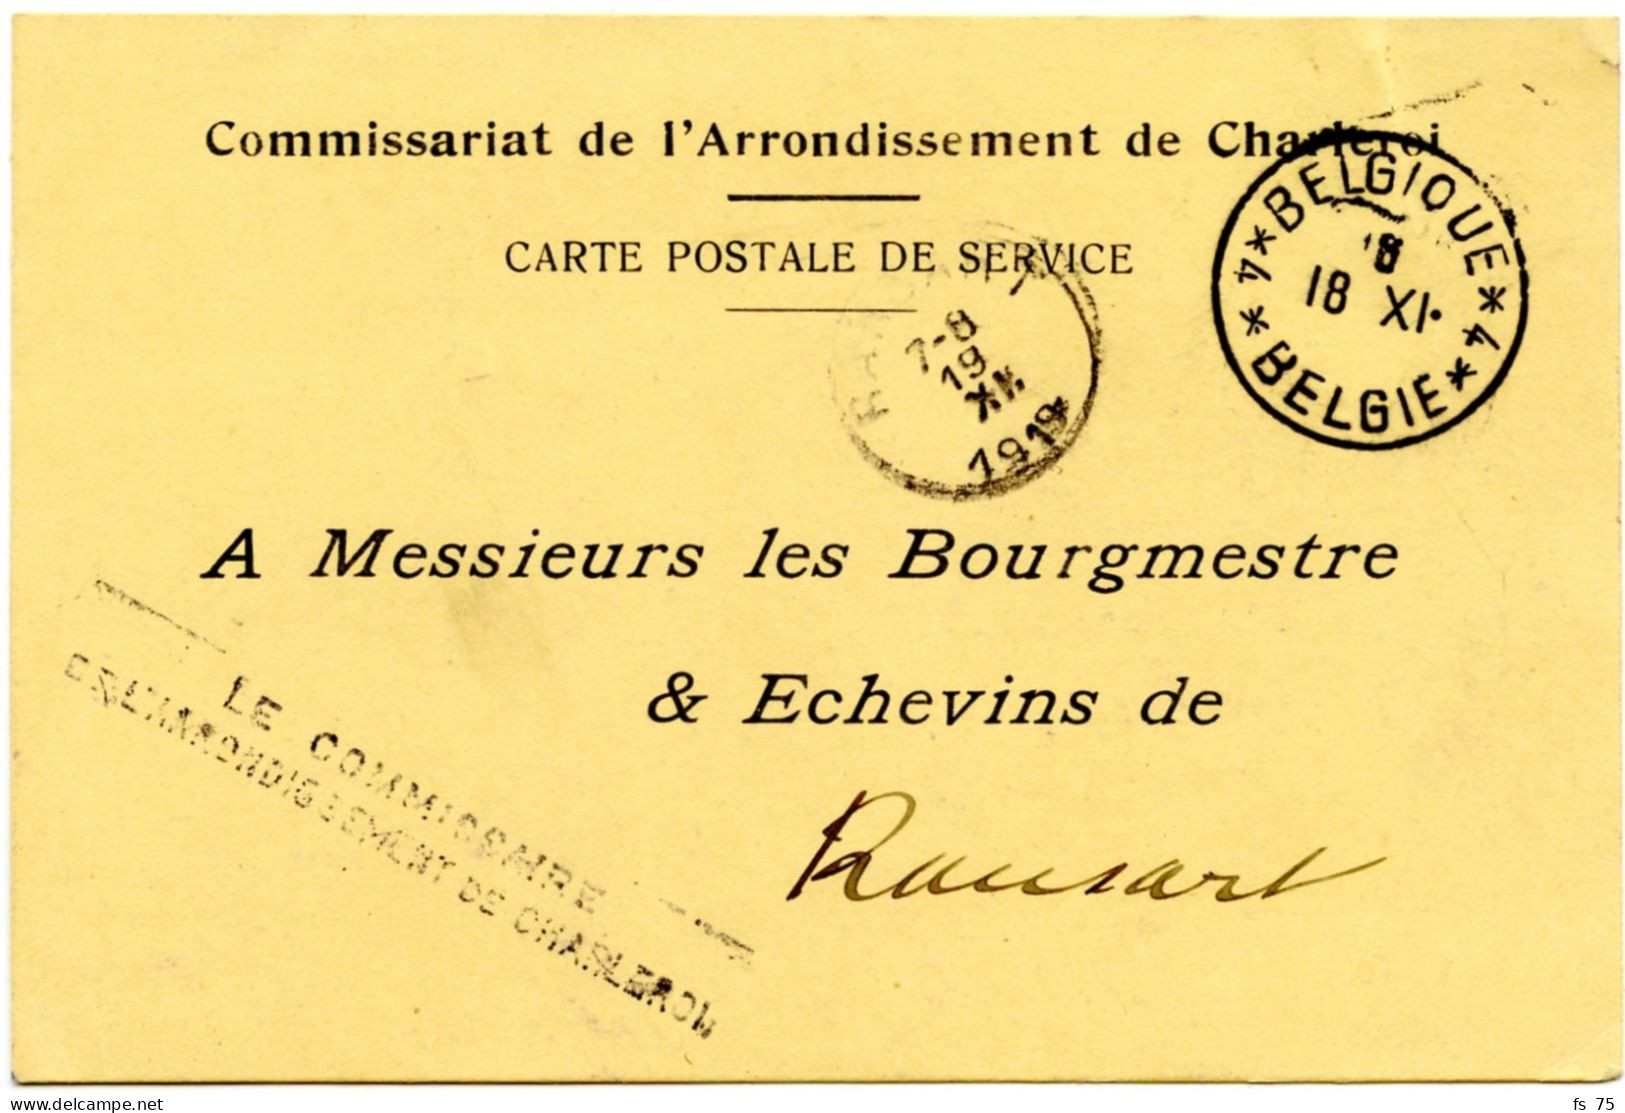 BELGIQUE - SIMPLE CERCLE BILINGUE 4 * BELGIQUE * 4 SUR CARTE EN FRANCHISE DE CHARLEROI, 1919 - Covers & Documents